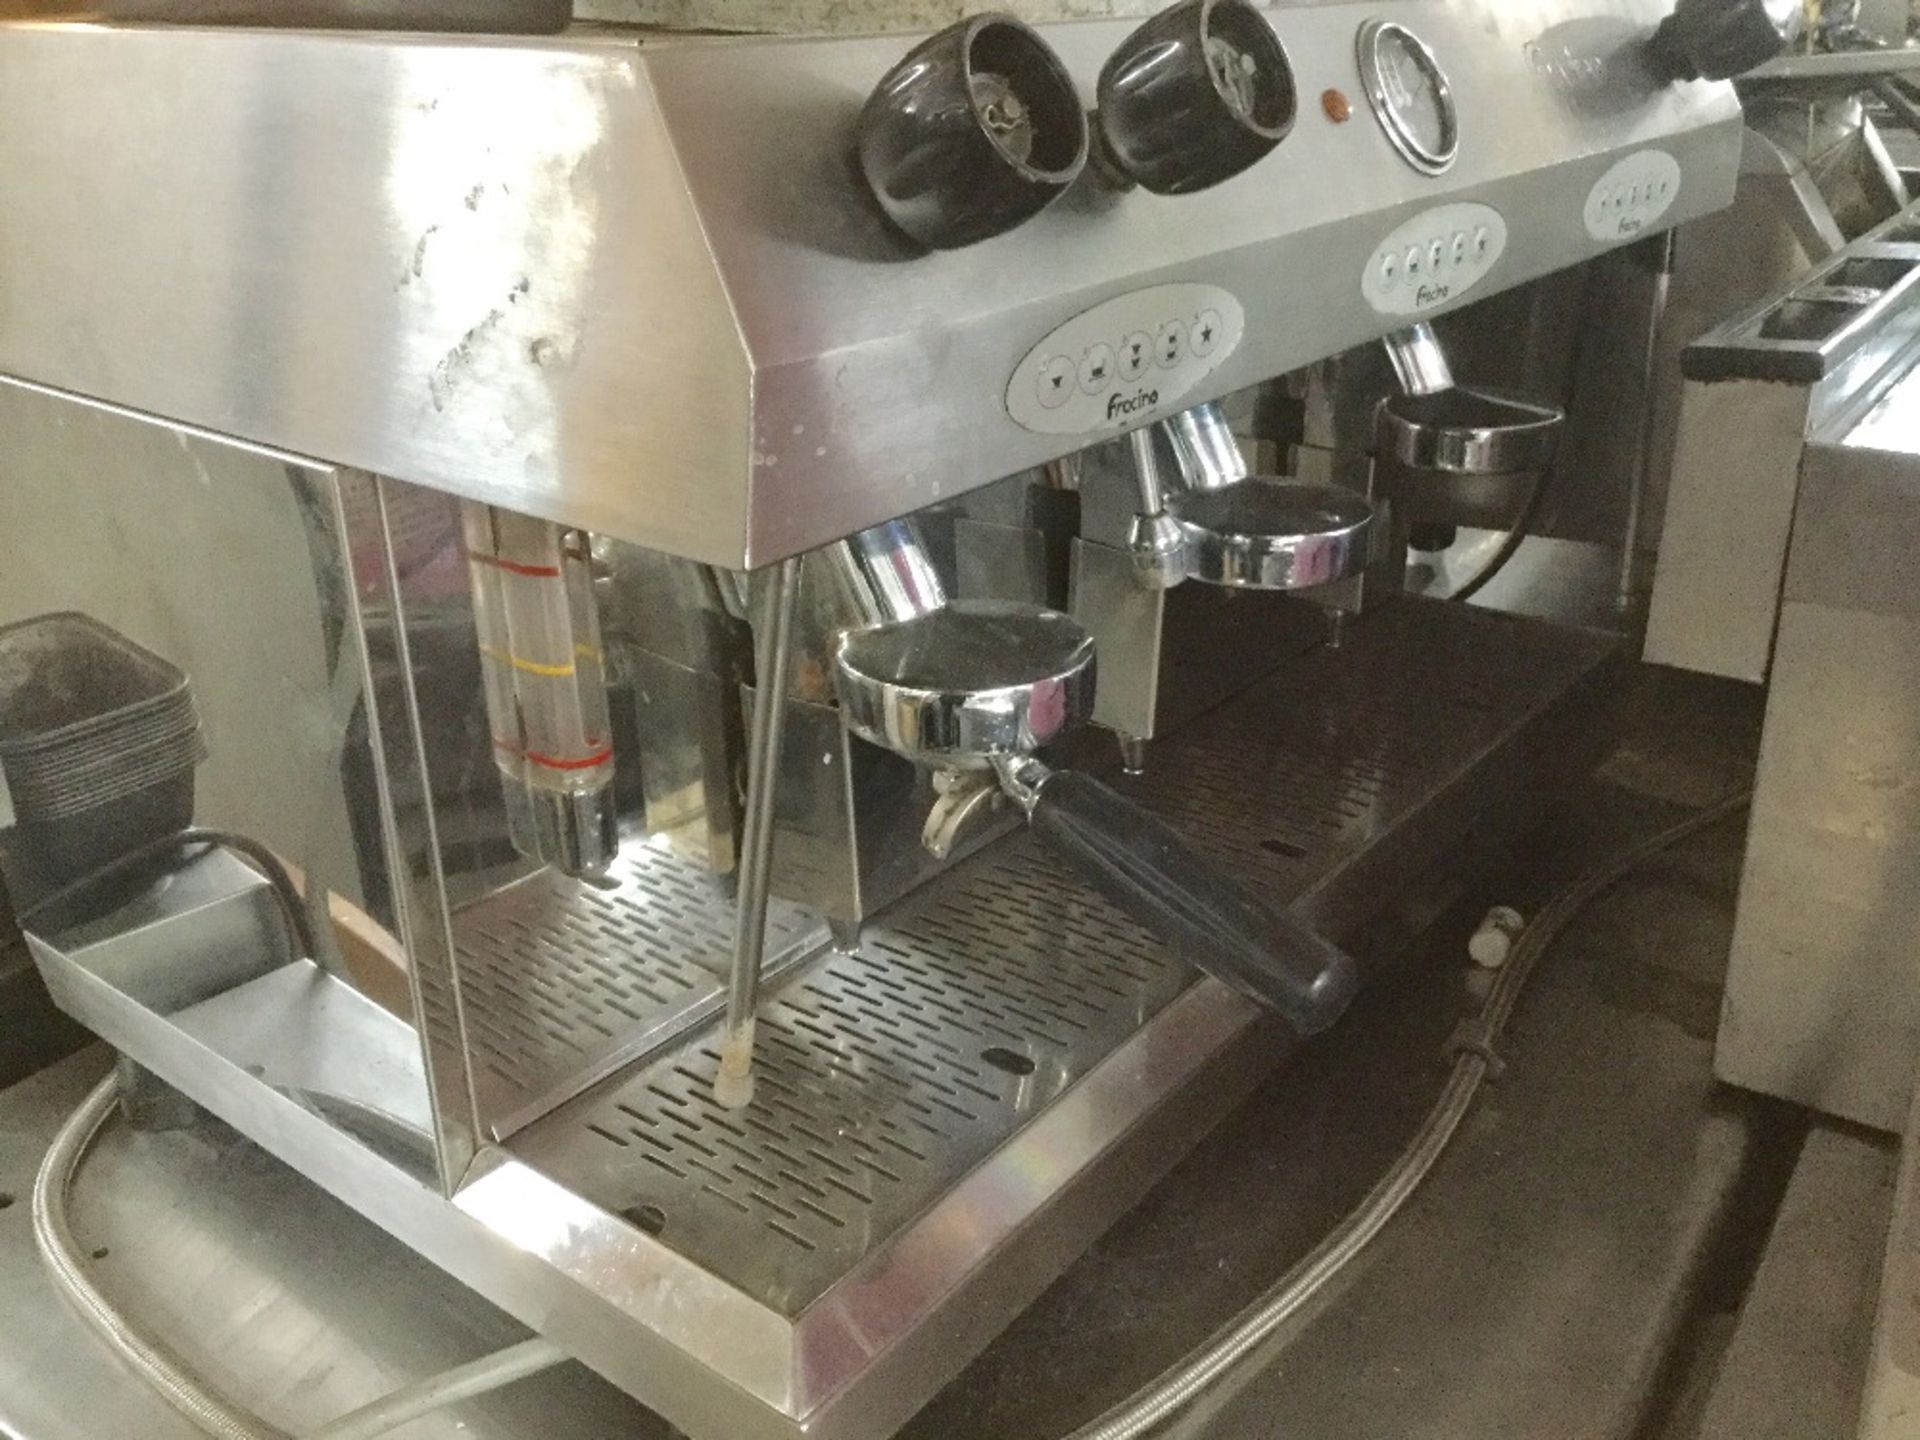 Fracino 3 Group Espresso Coffee Machine – as found – NO VAT